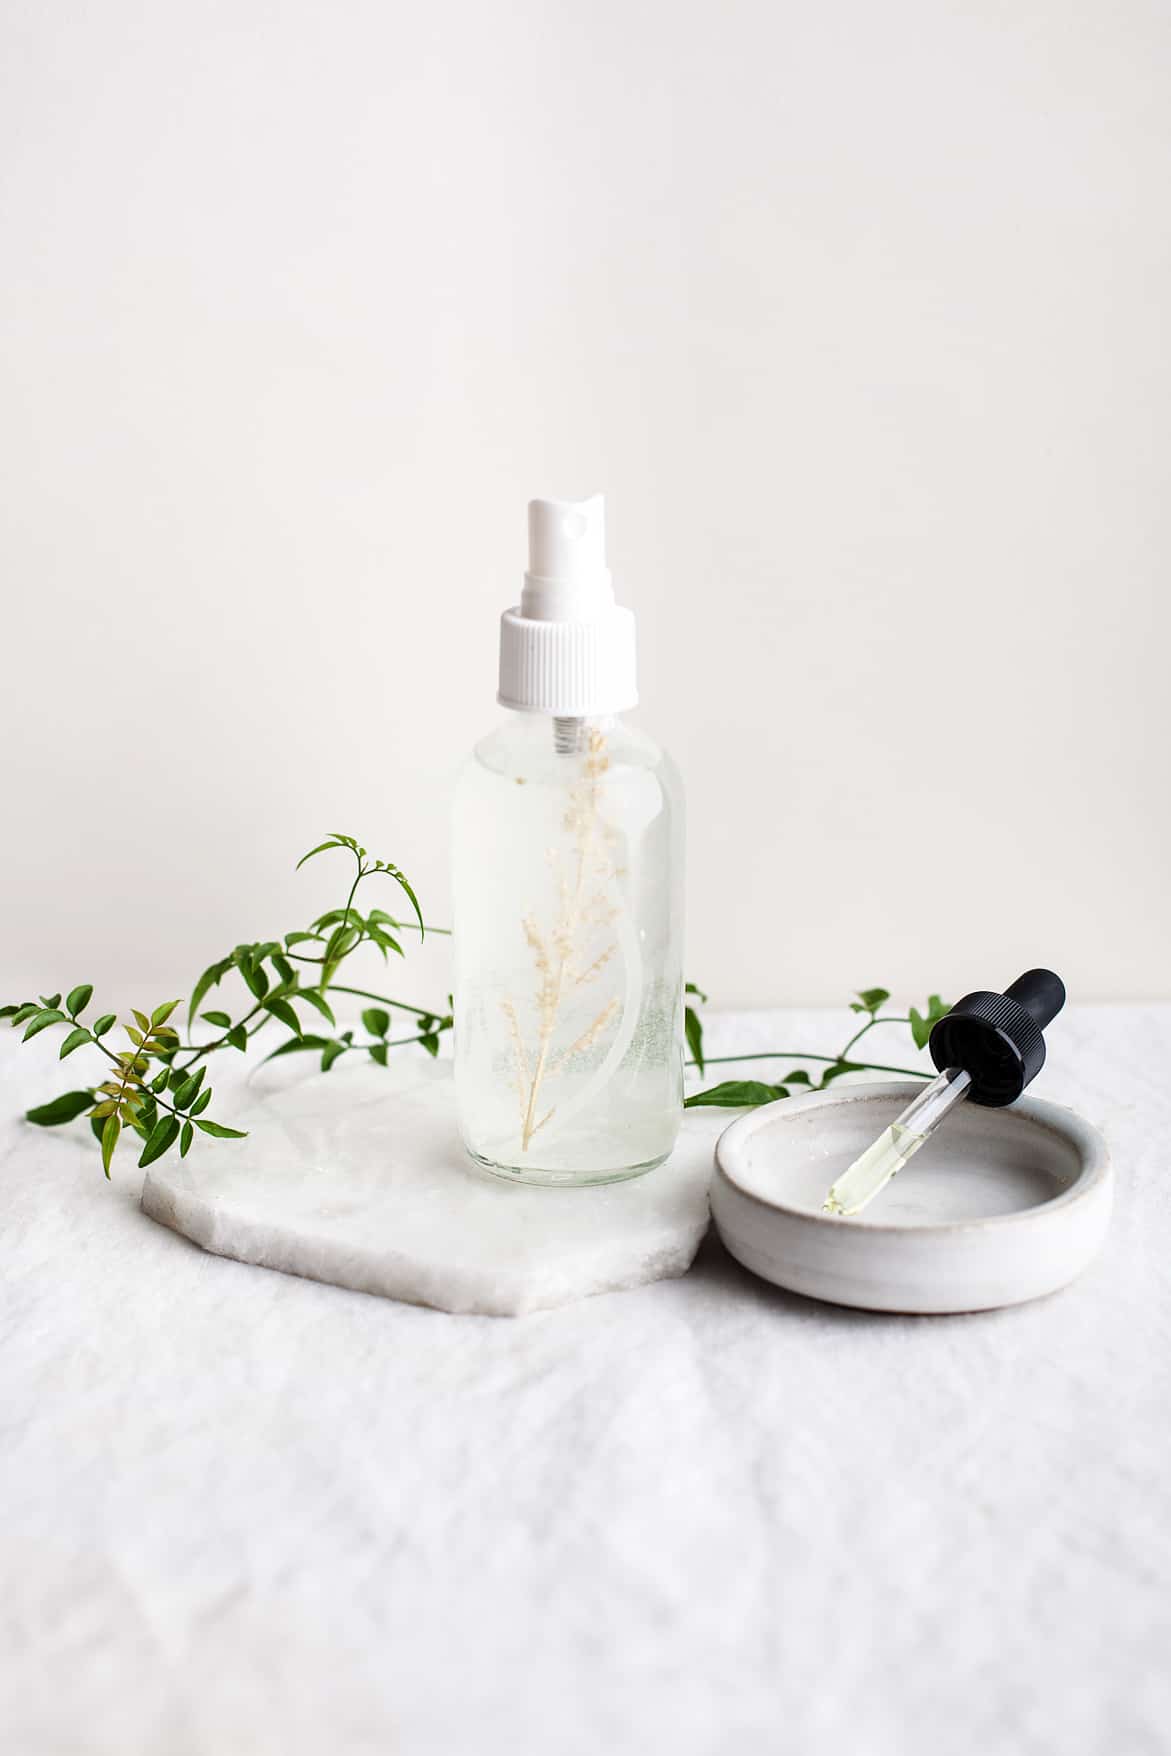 Making jasmine essential oil perfume spray